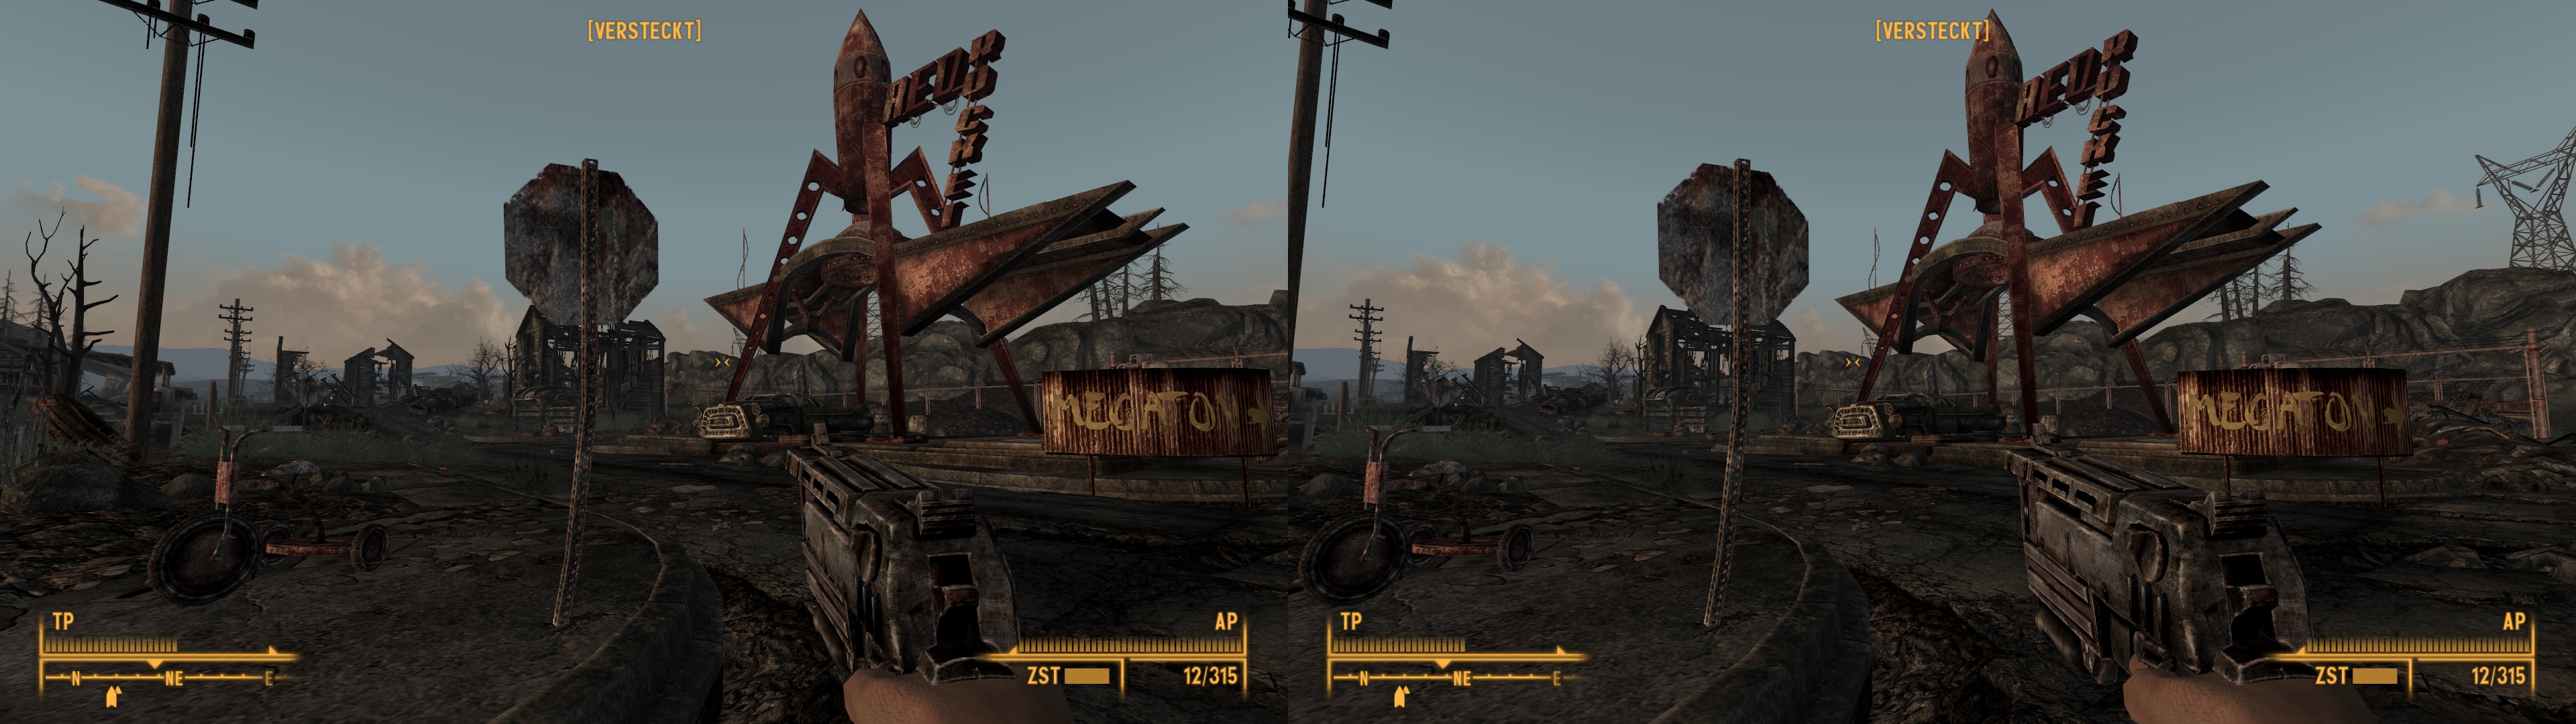 Fallout 3 Crash At New Game